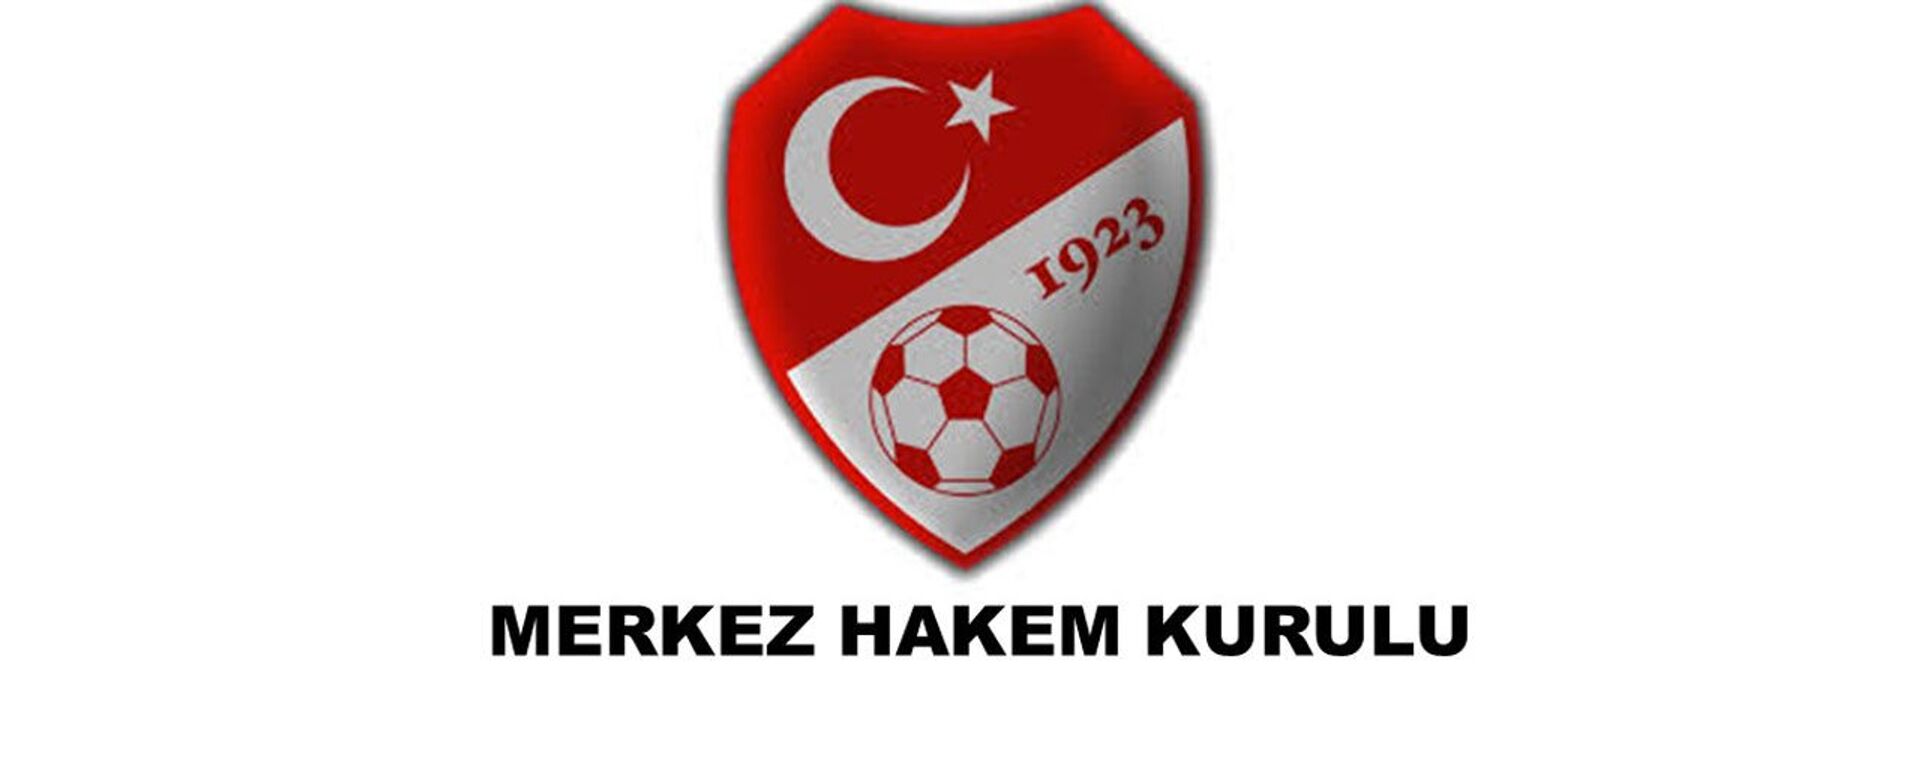 Merkez Hakem Kurulu - Sputnik Türkiye, 1920, 25.08.2020